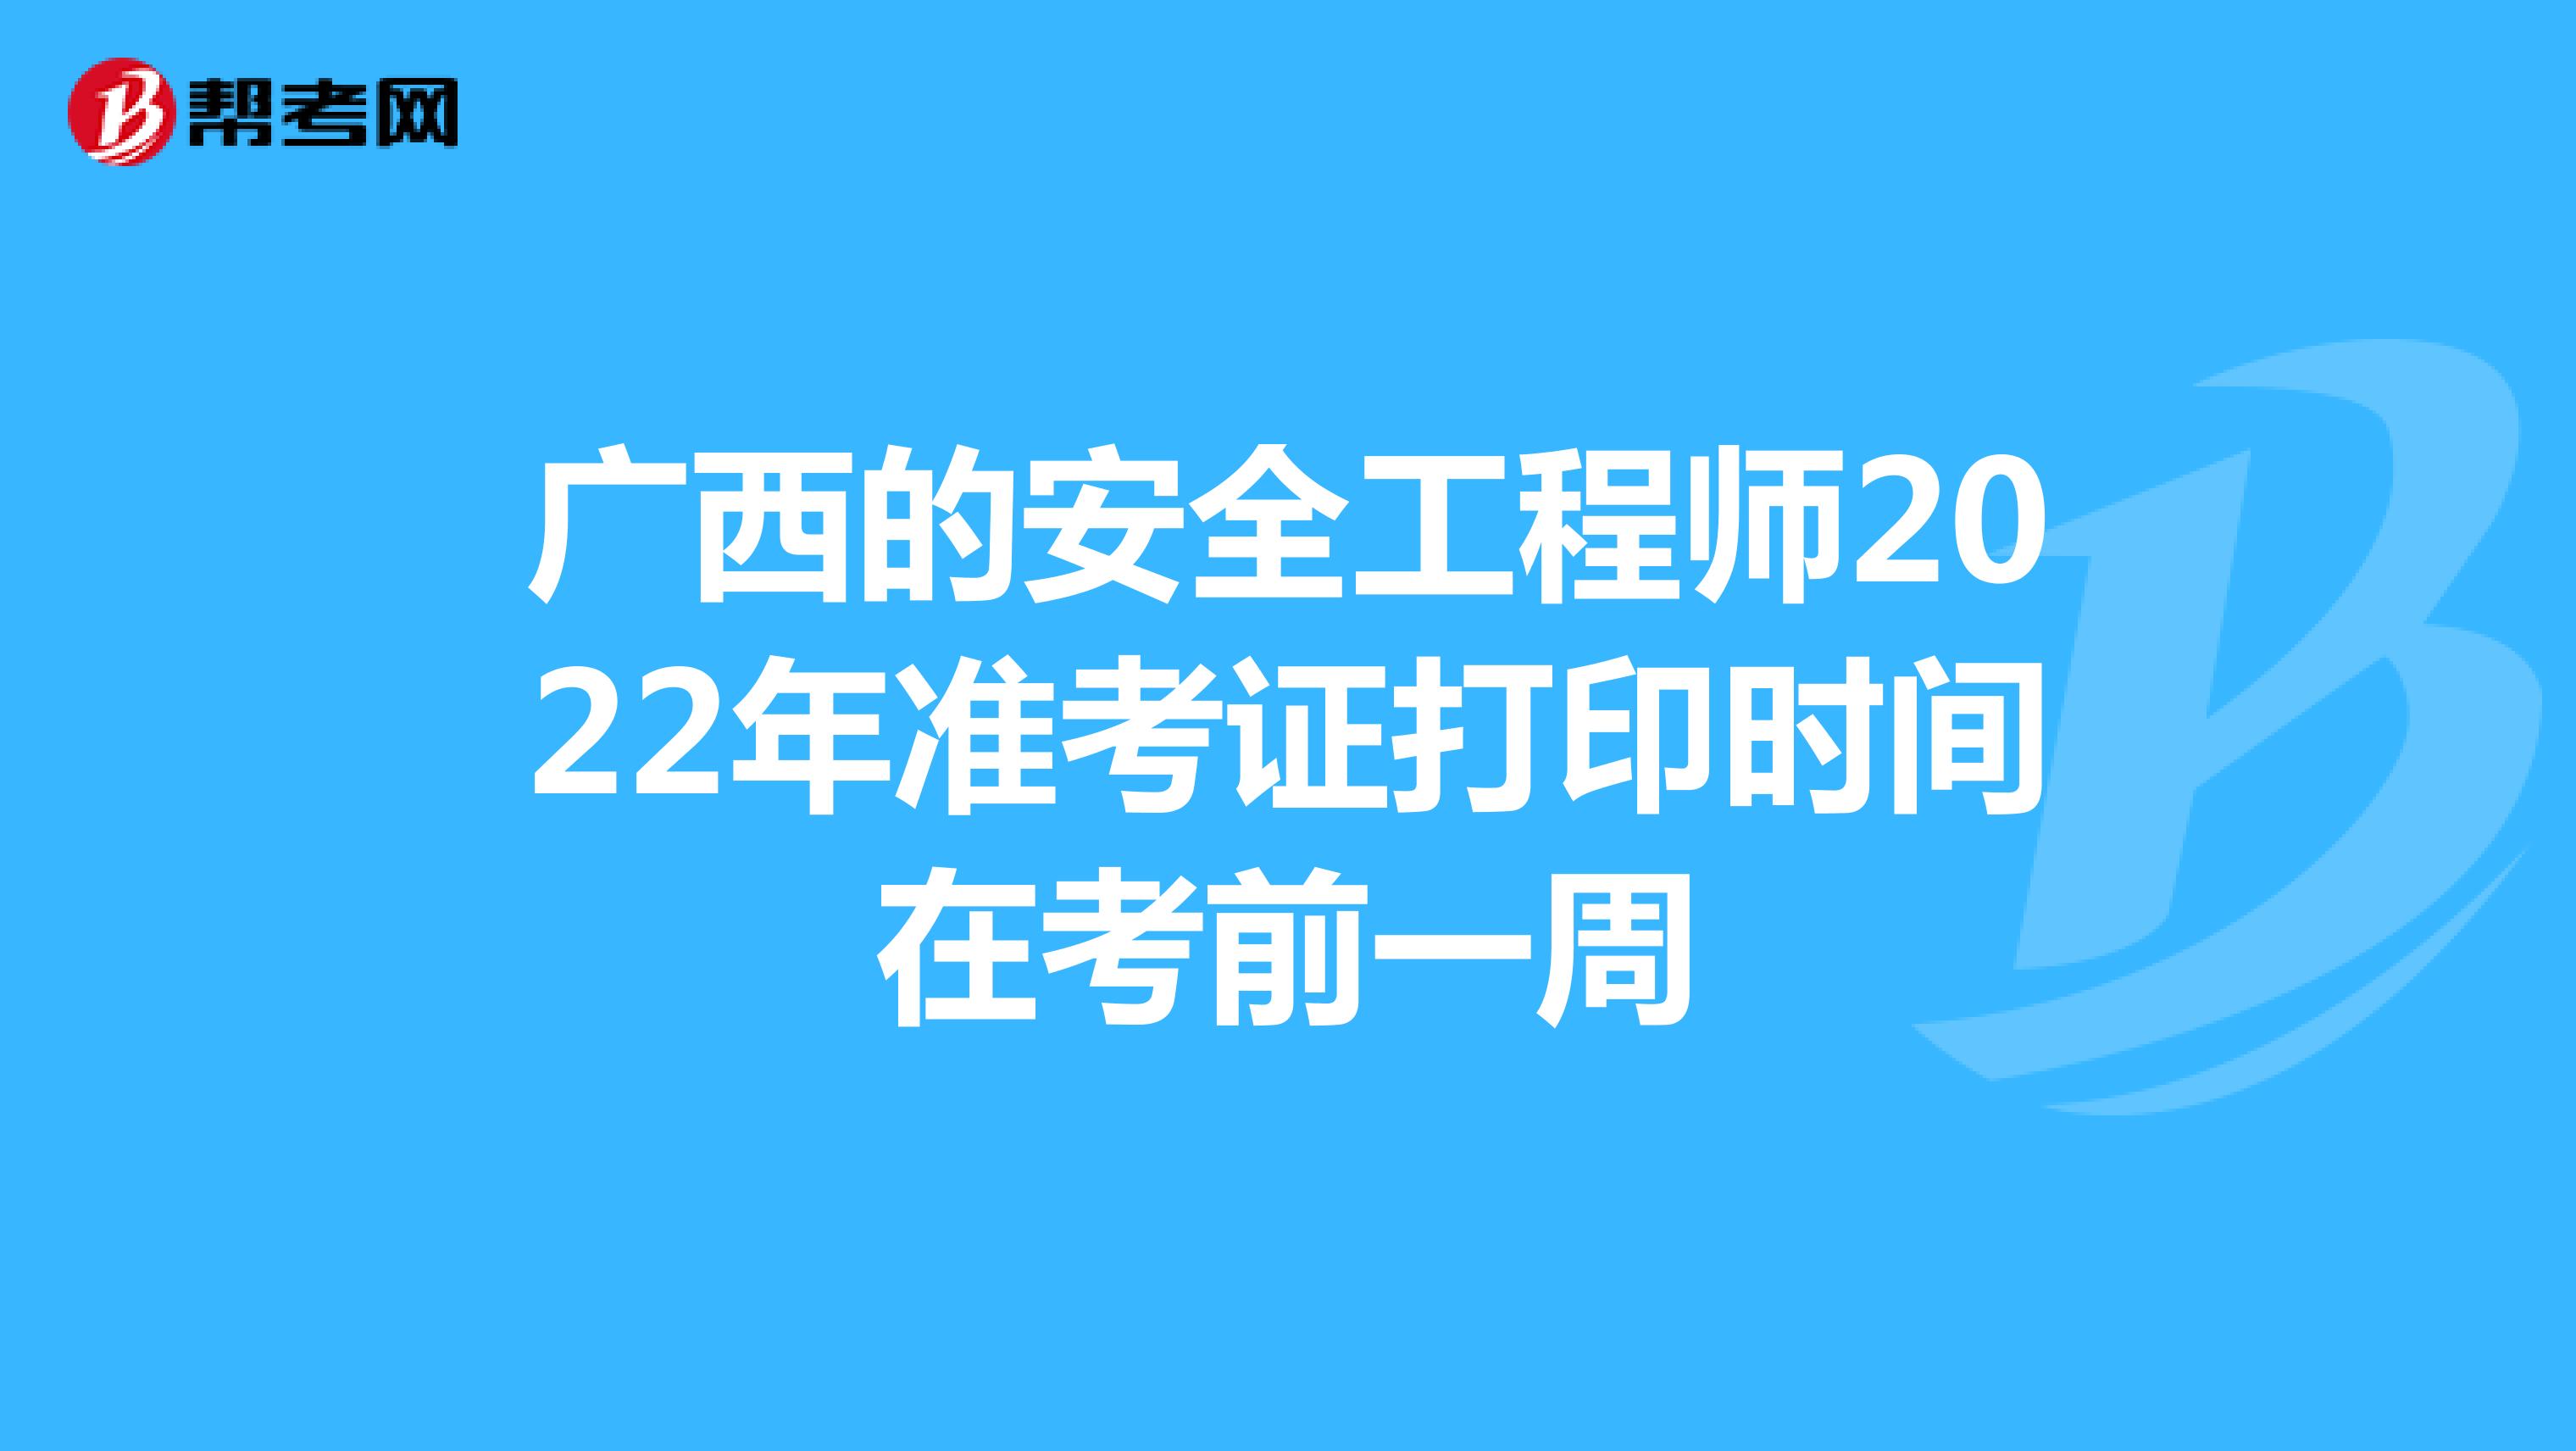 广西的安全工程师2022年准考证打印时间在考前一周